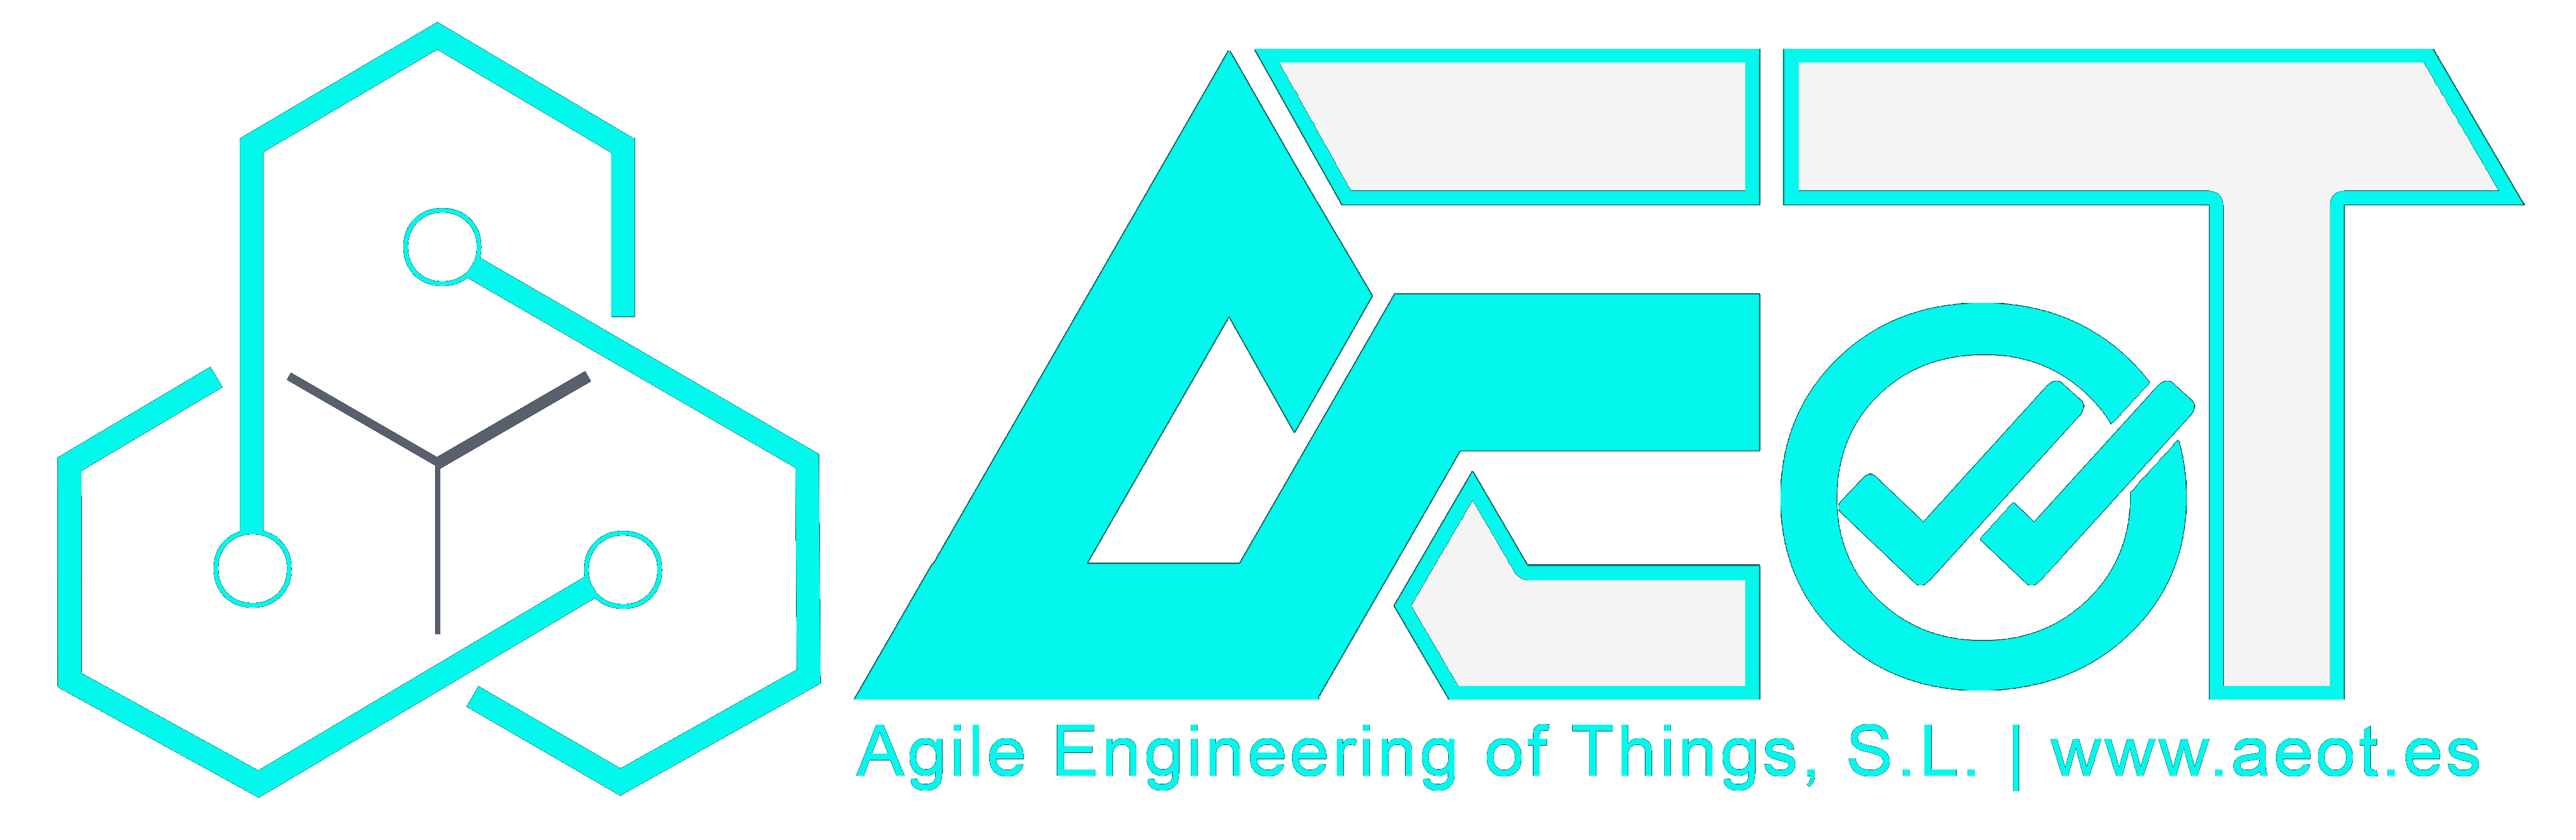 Servicios de ingeniería AEOT